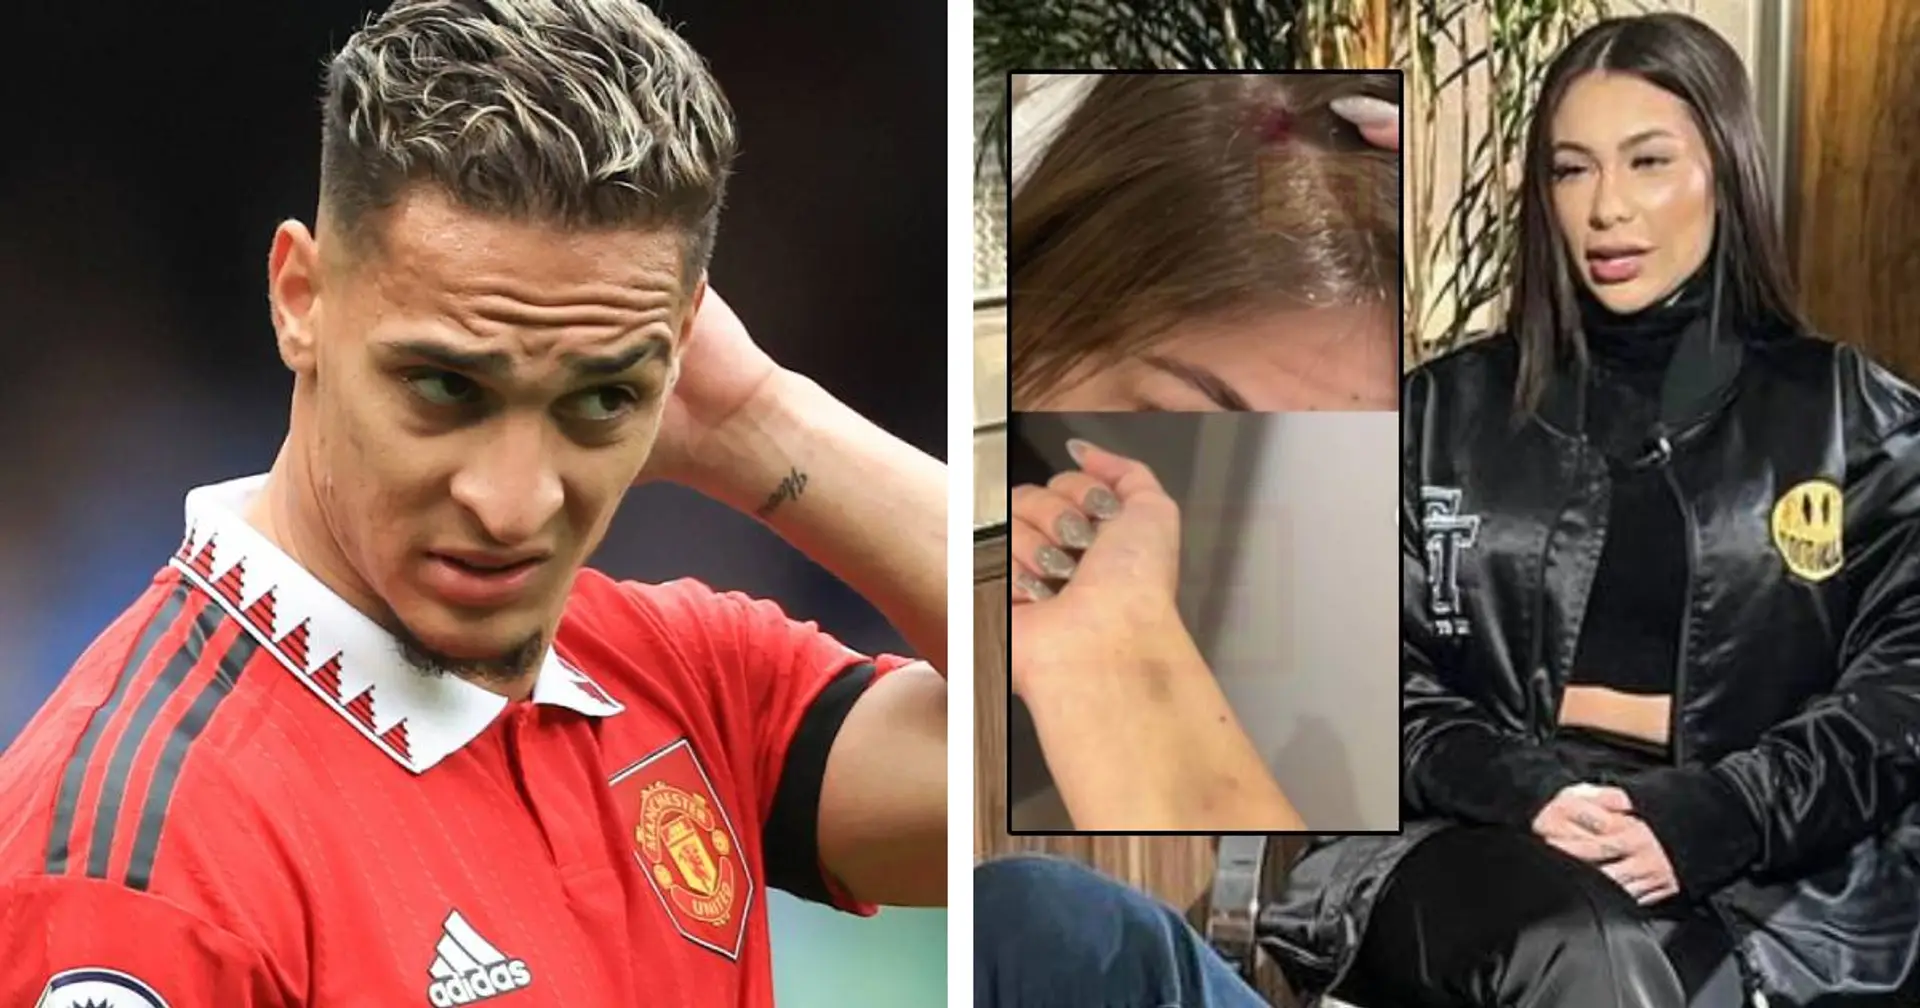 Problème pour une star de Manchester United, l'accusation de son ex-petite amie : "Je tremblais de peur"